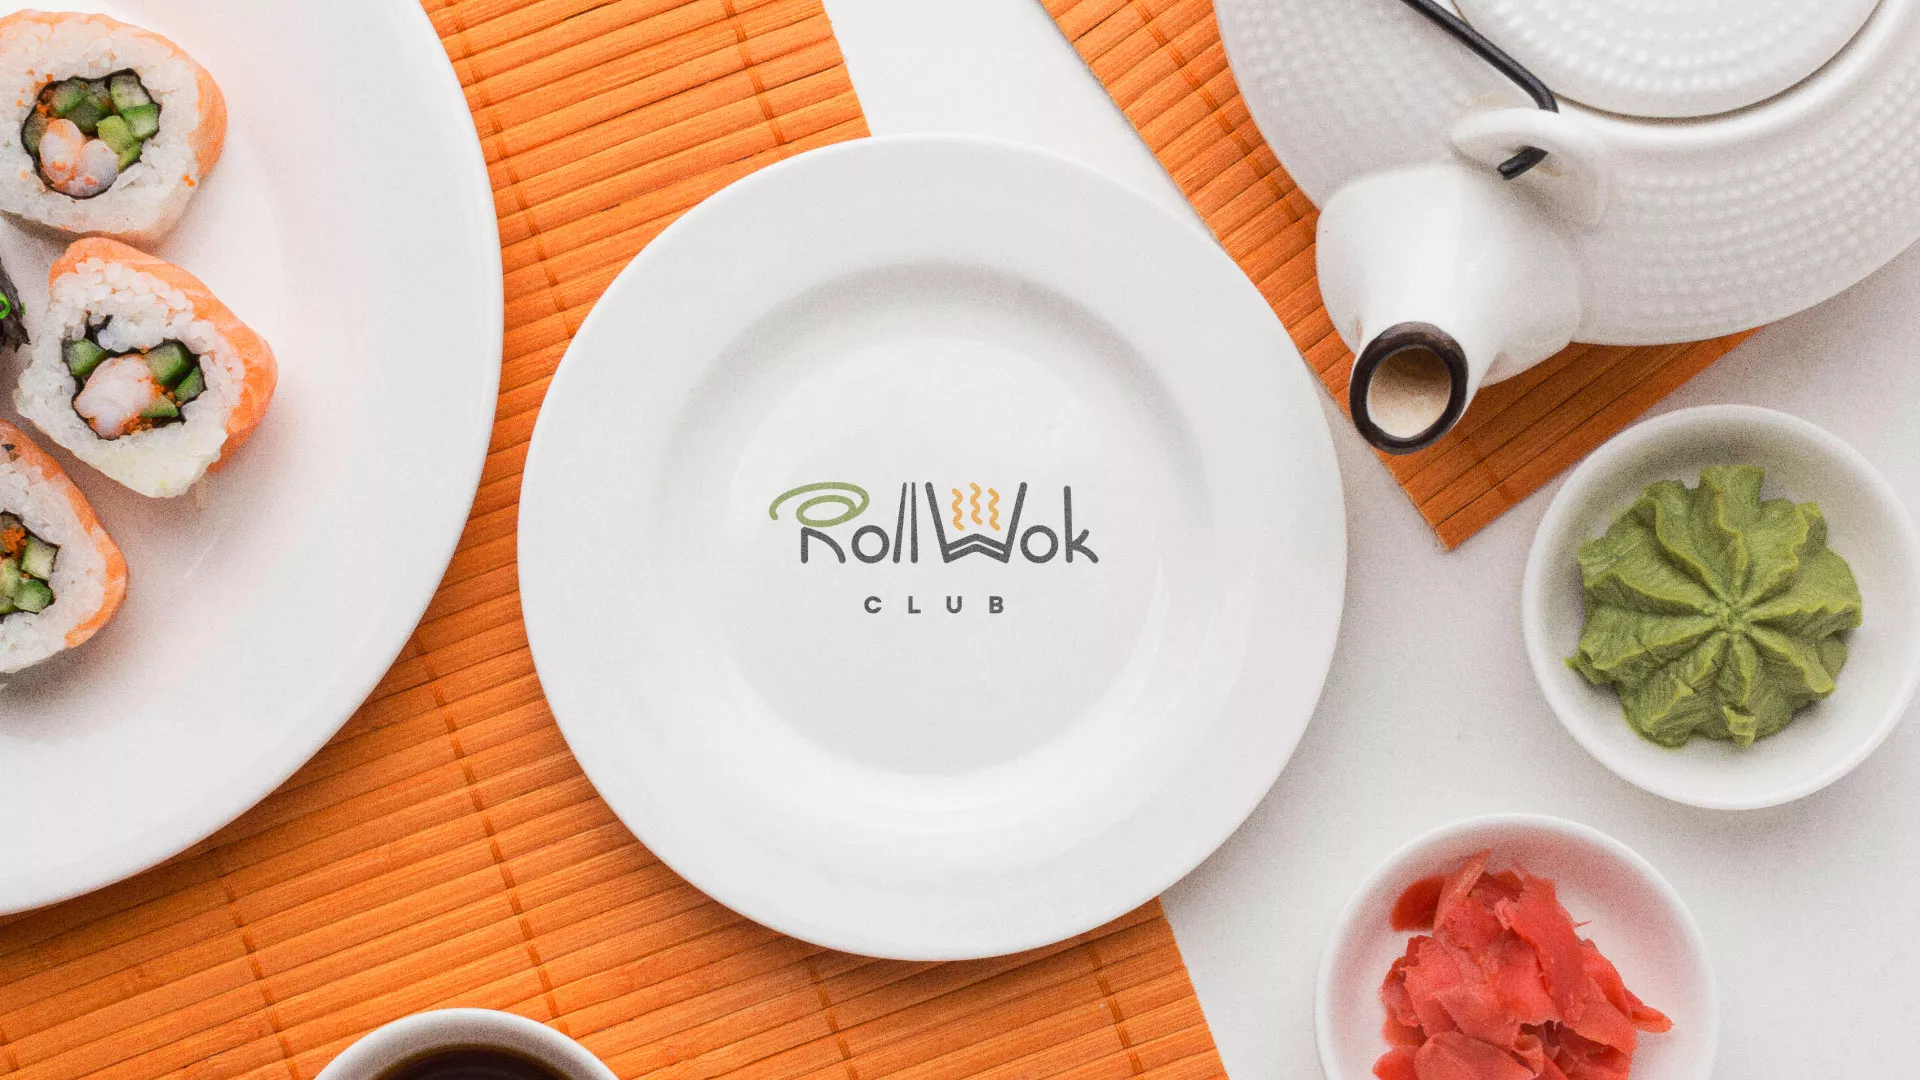 Разработка логотипа и фирменного стиля суши-бара «Roll Wok Club» в Верхнем Уфалее